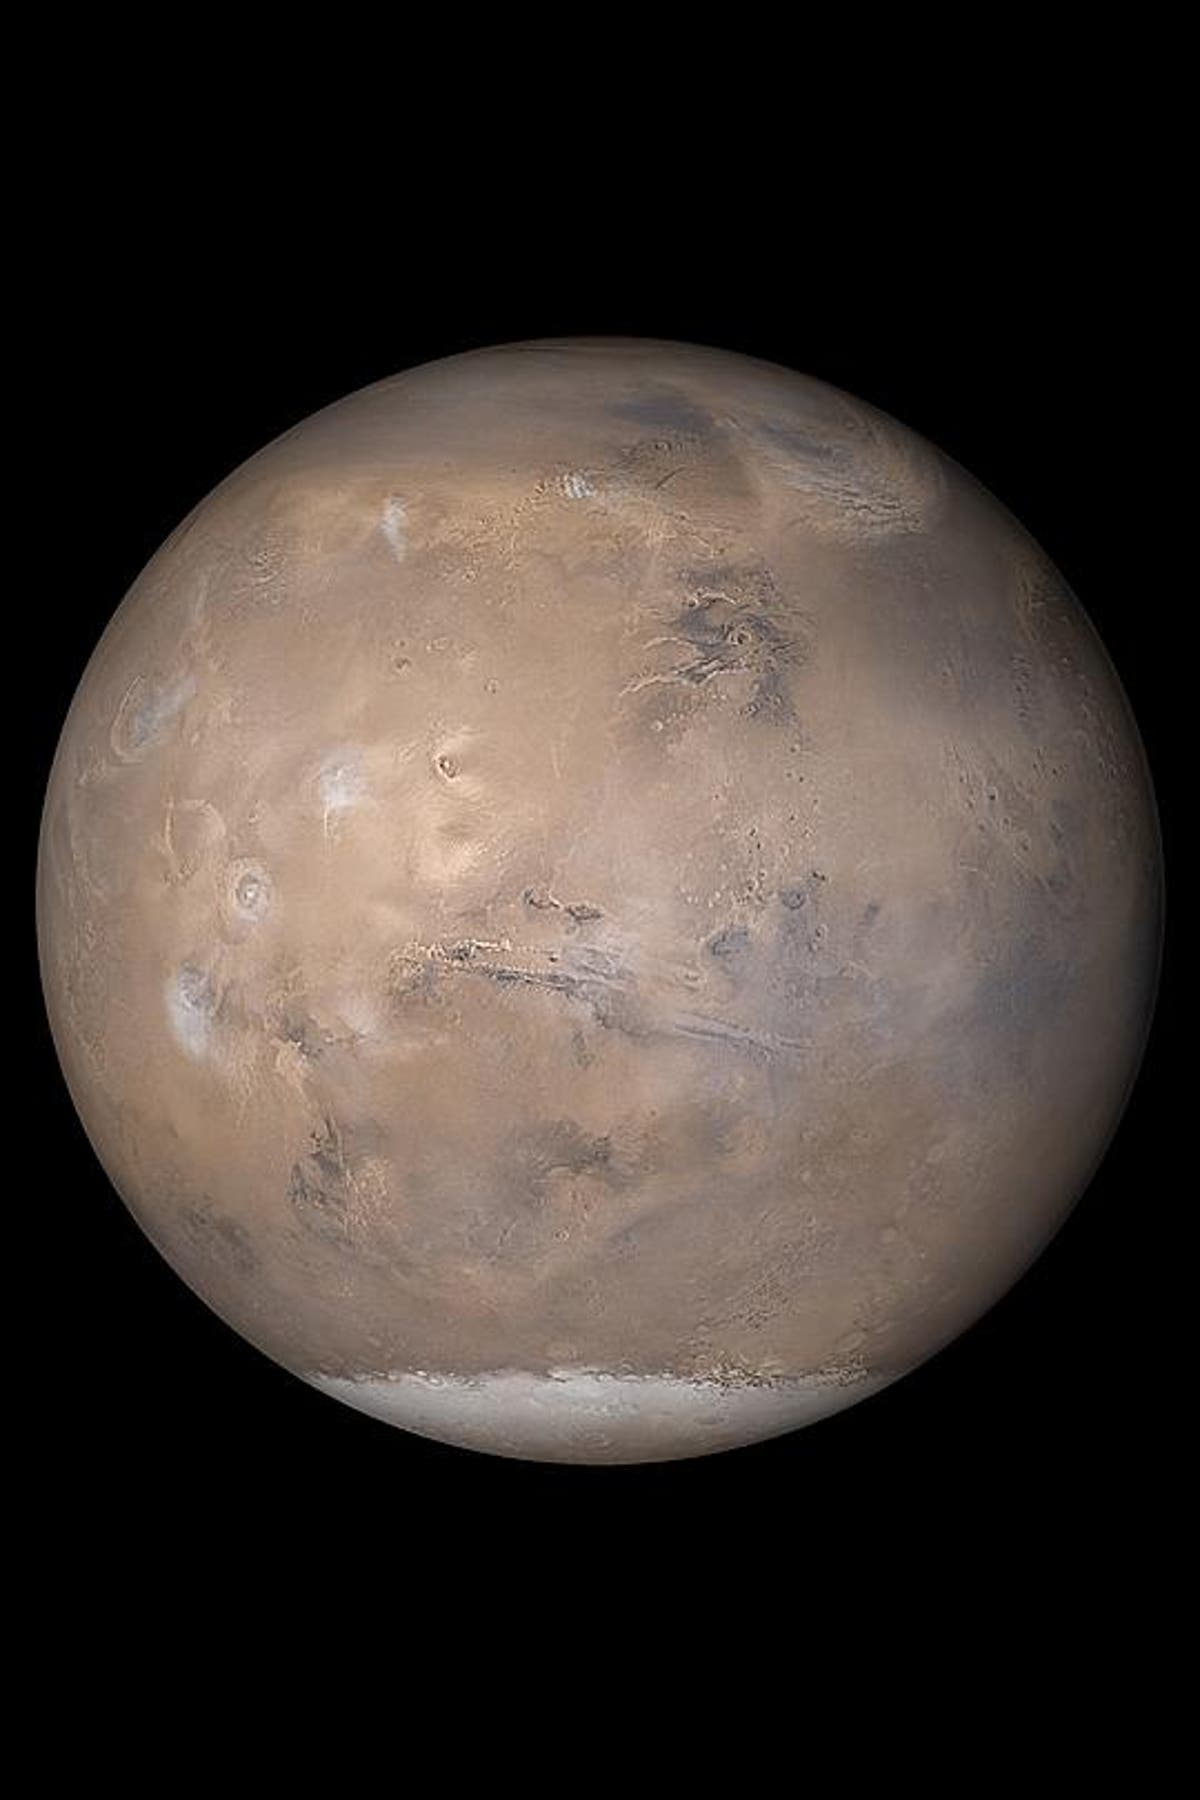 يستهدف تلسكوب ويب التابع لناسا المريخ لأول مرة